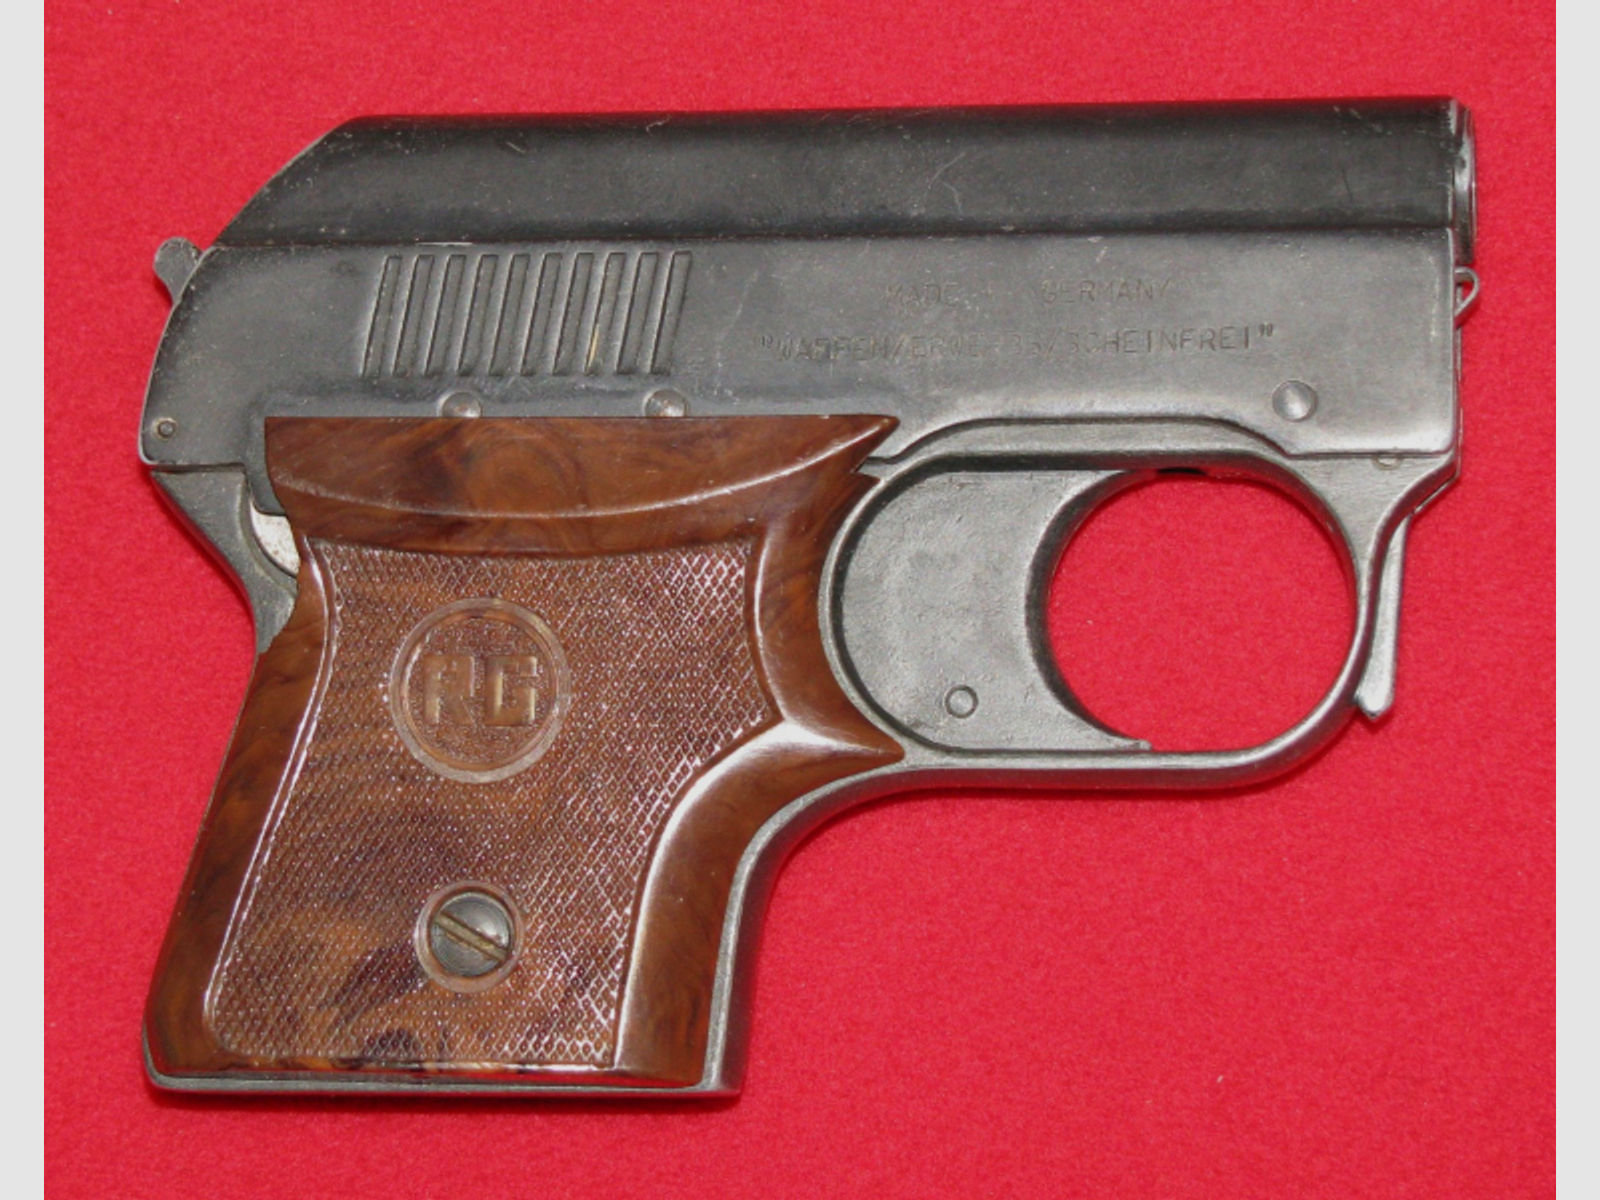 Röhm Schreckschuss - Pistole, eine Röhm RG 3 S mit der PTB 32 - 69, Bitte ansehen